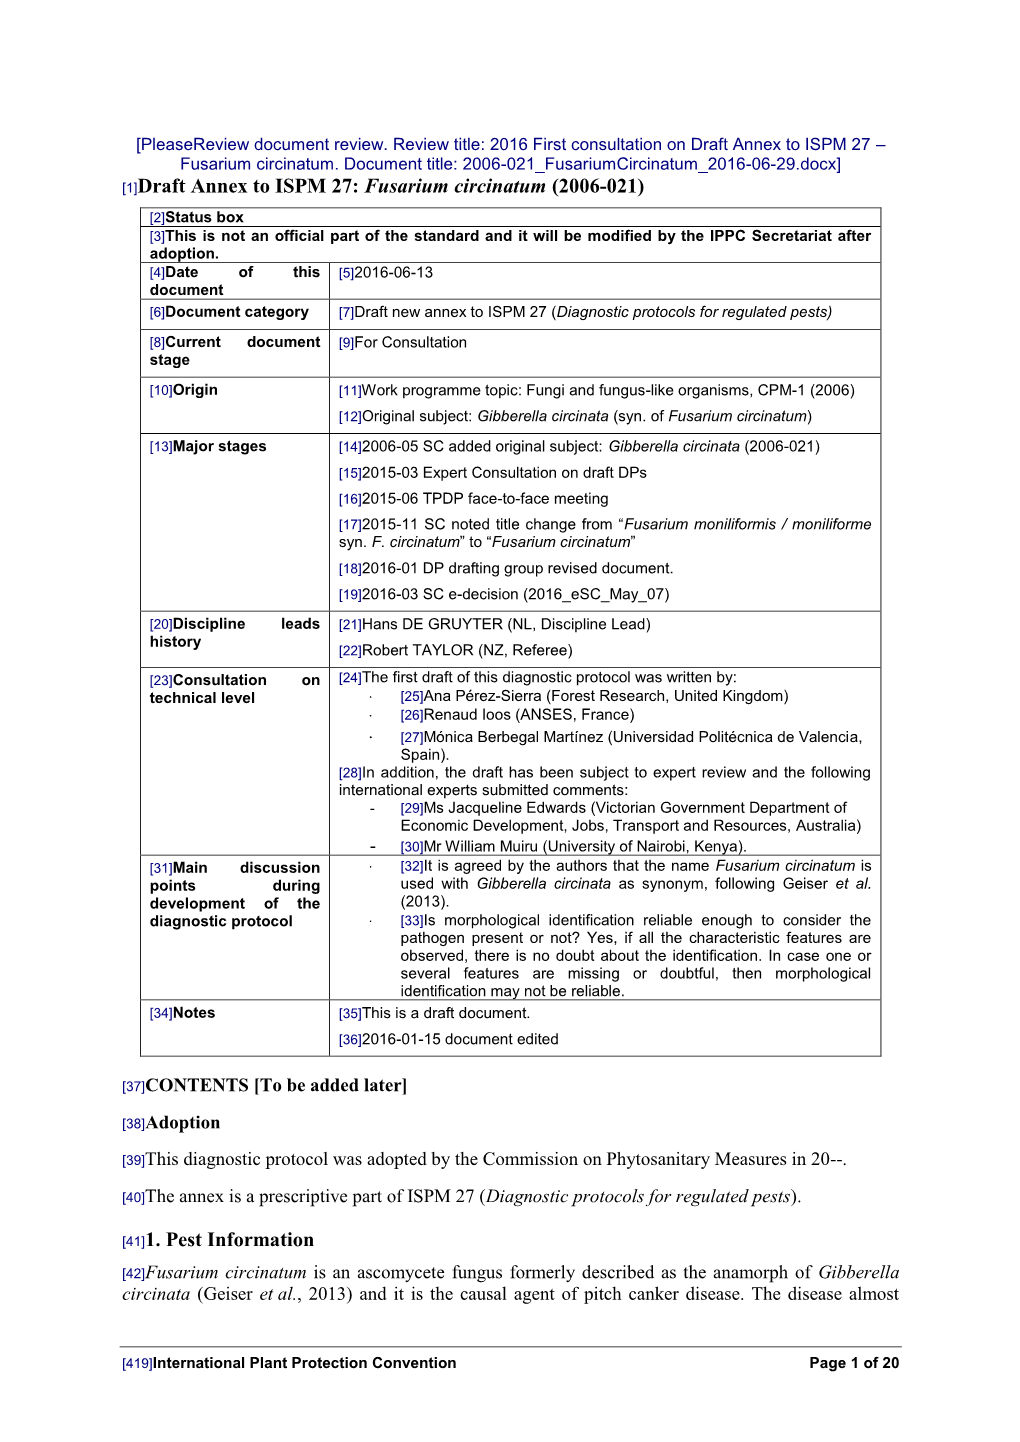 Draft Annex to ISPM 27: Fusarium Circinatum (2006-021)